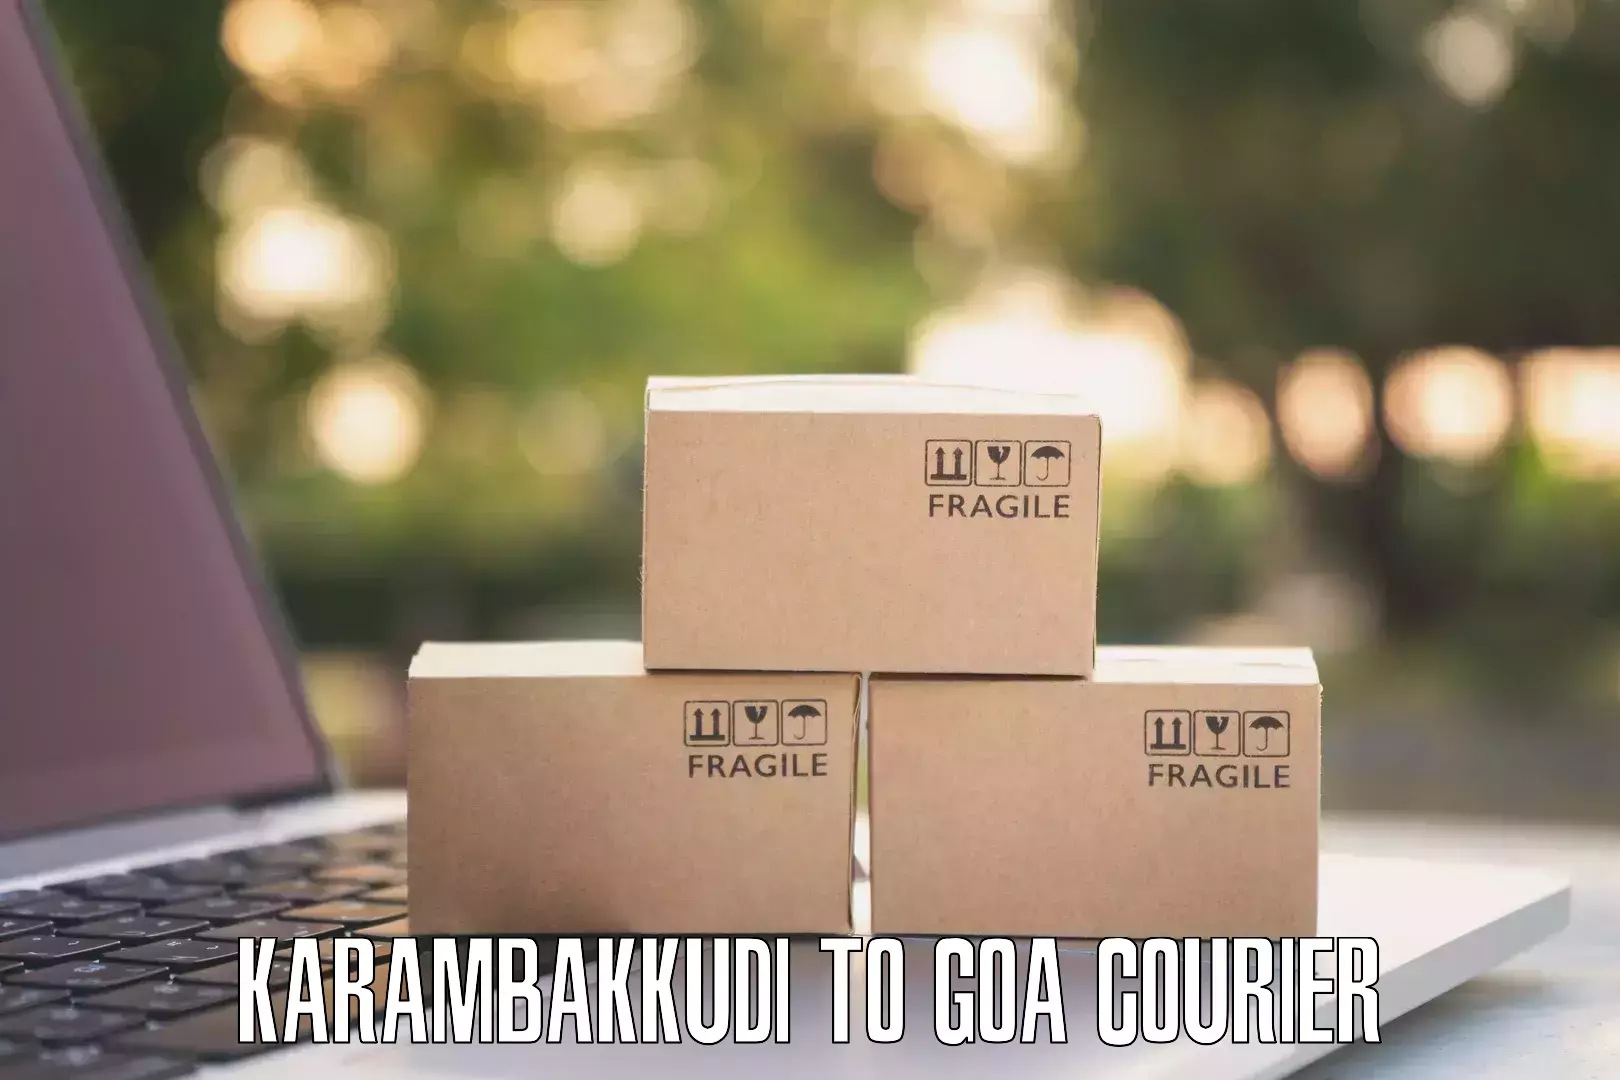 Reliable parcel services in Karambakkudi to Goa